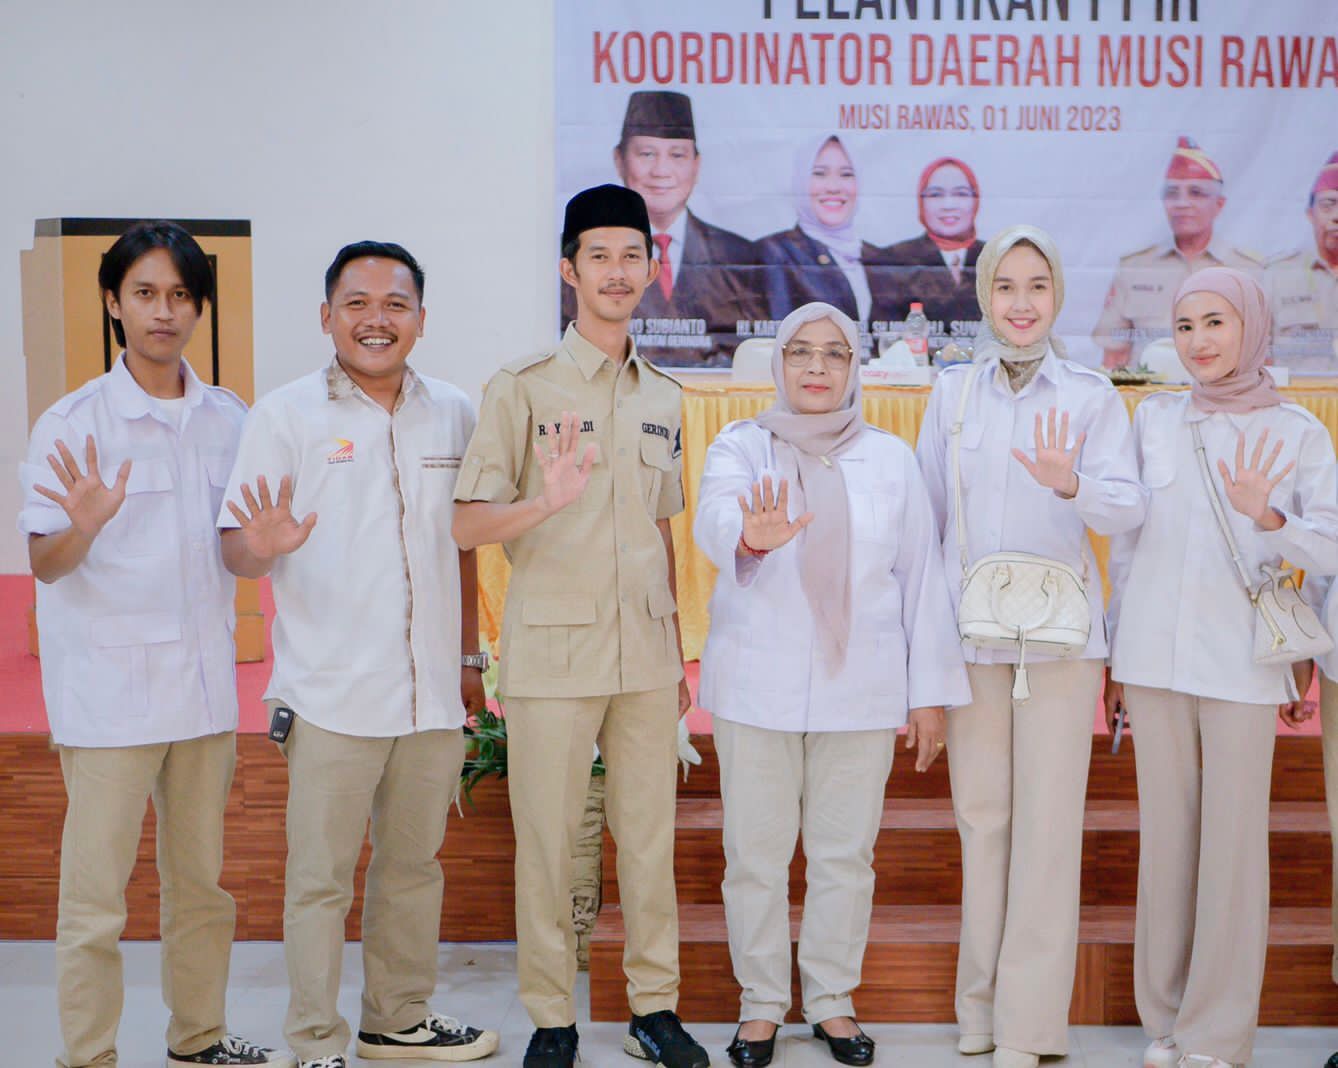 Tidar Targetkan Suara 40 Persen dari Milenial untuk Prabowo di Pilpres 